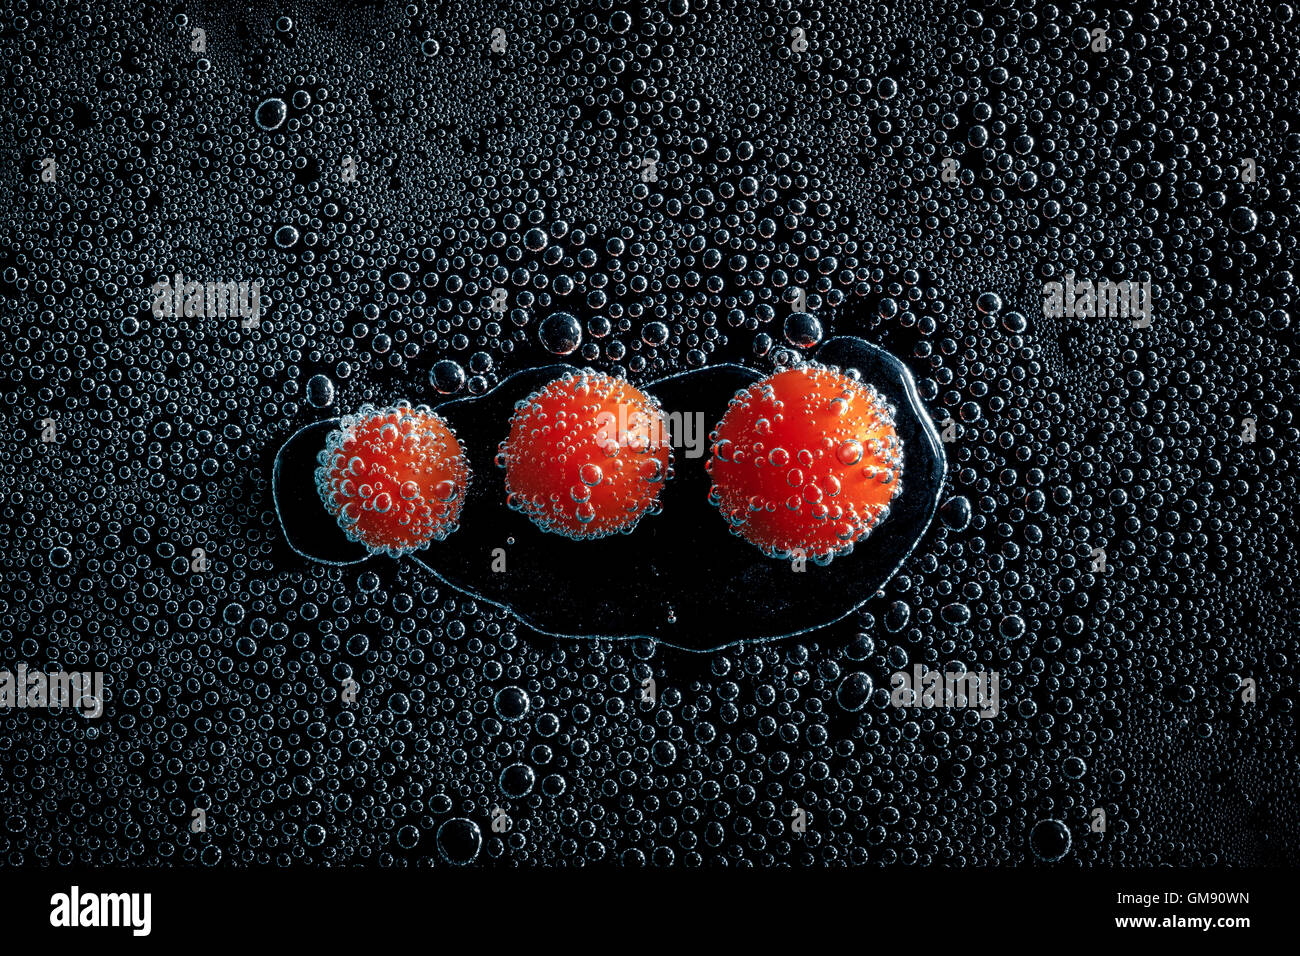 Tomates cerises dans de l'eau minérale, une série de photos. Close-up de l'eau gazéifiée sur fond noir, conceptuel Banque D'Images